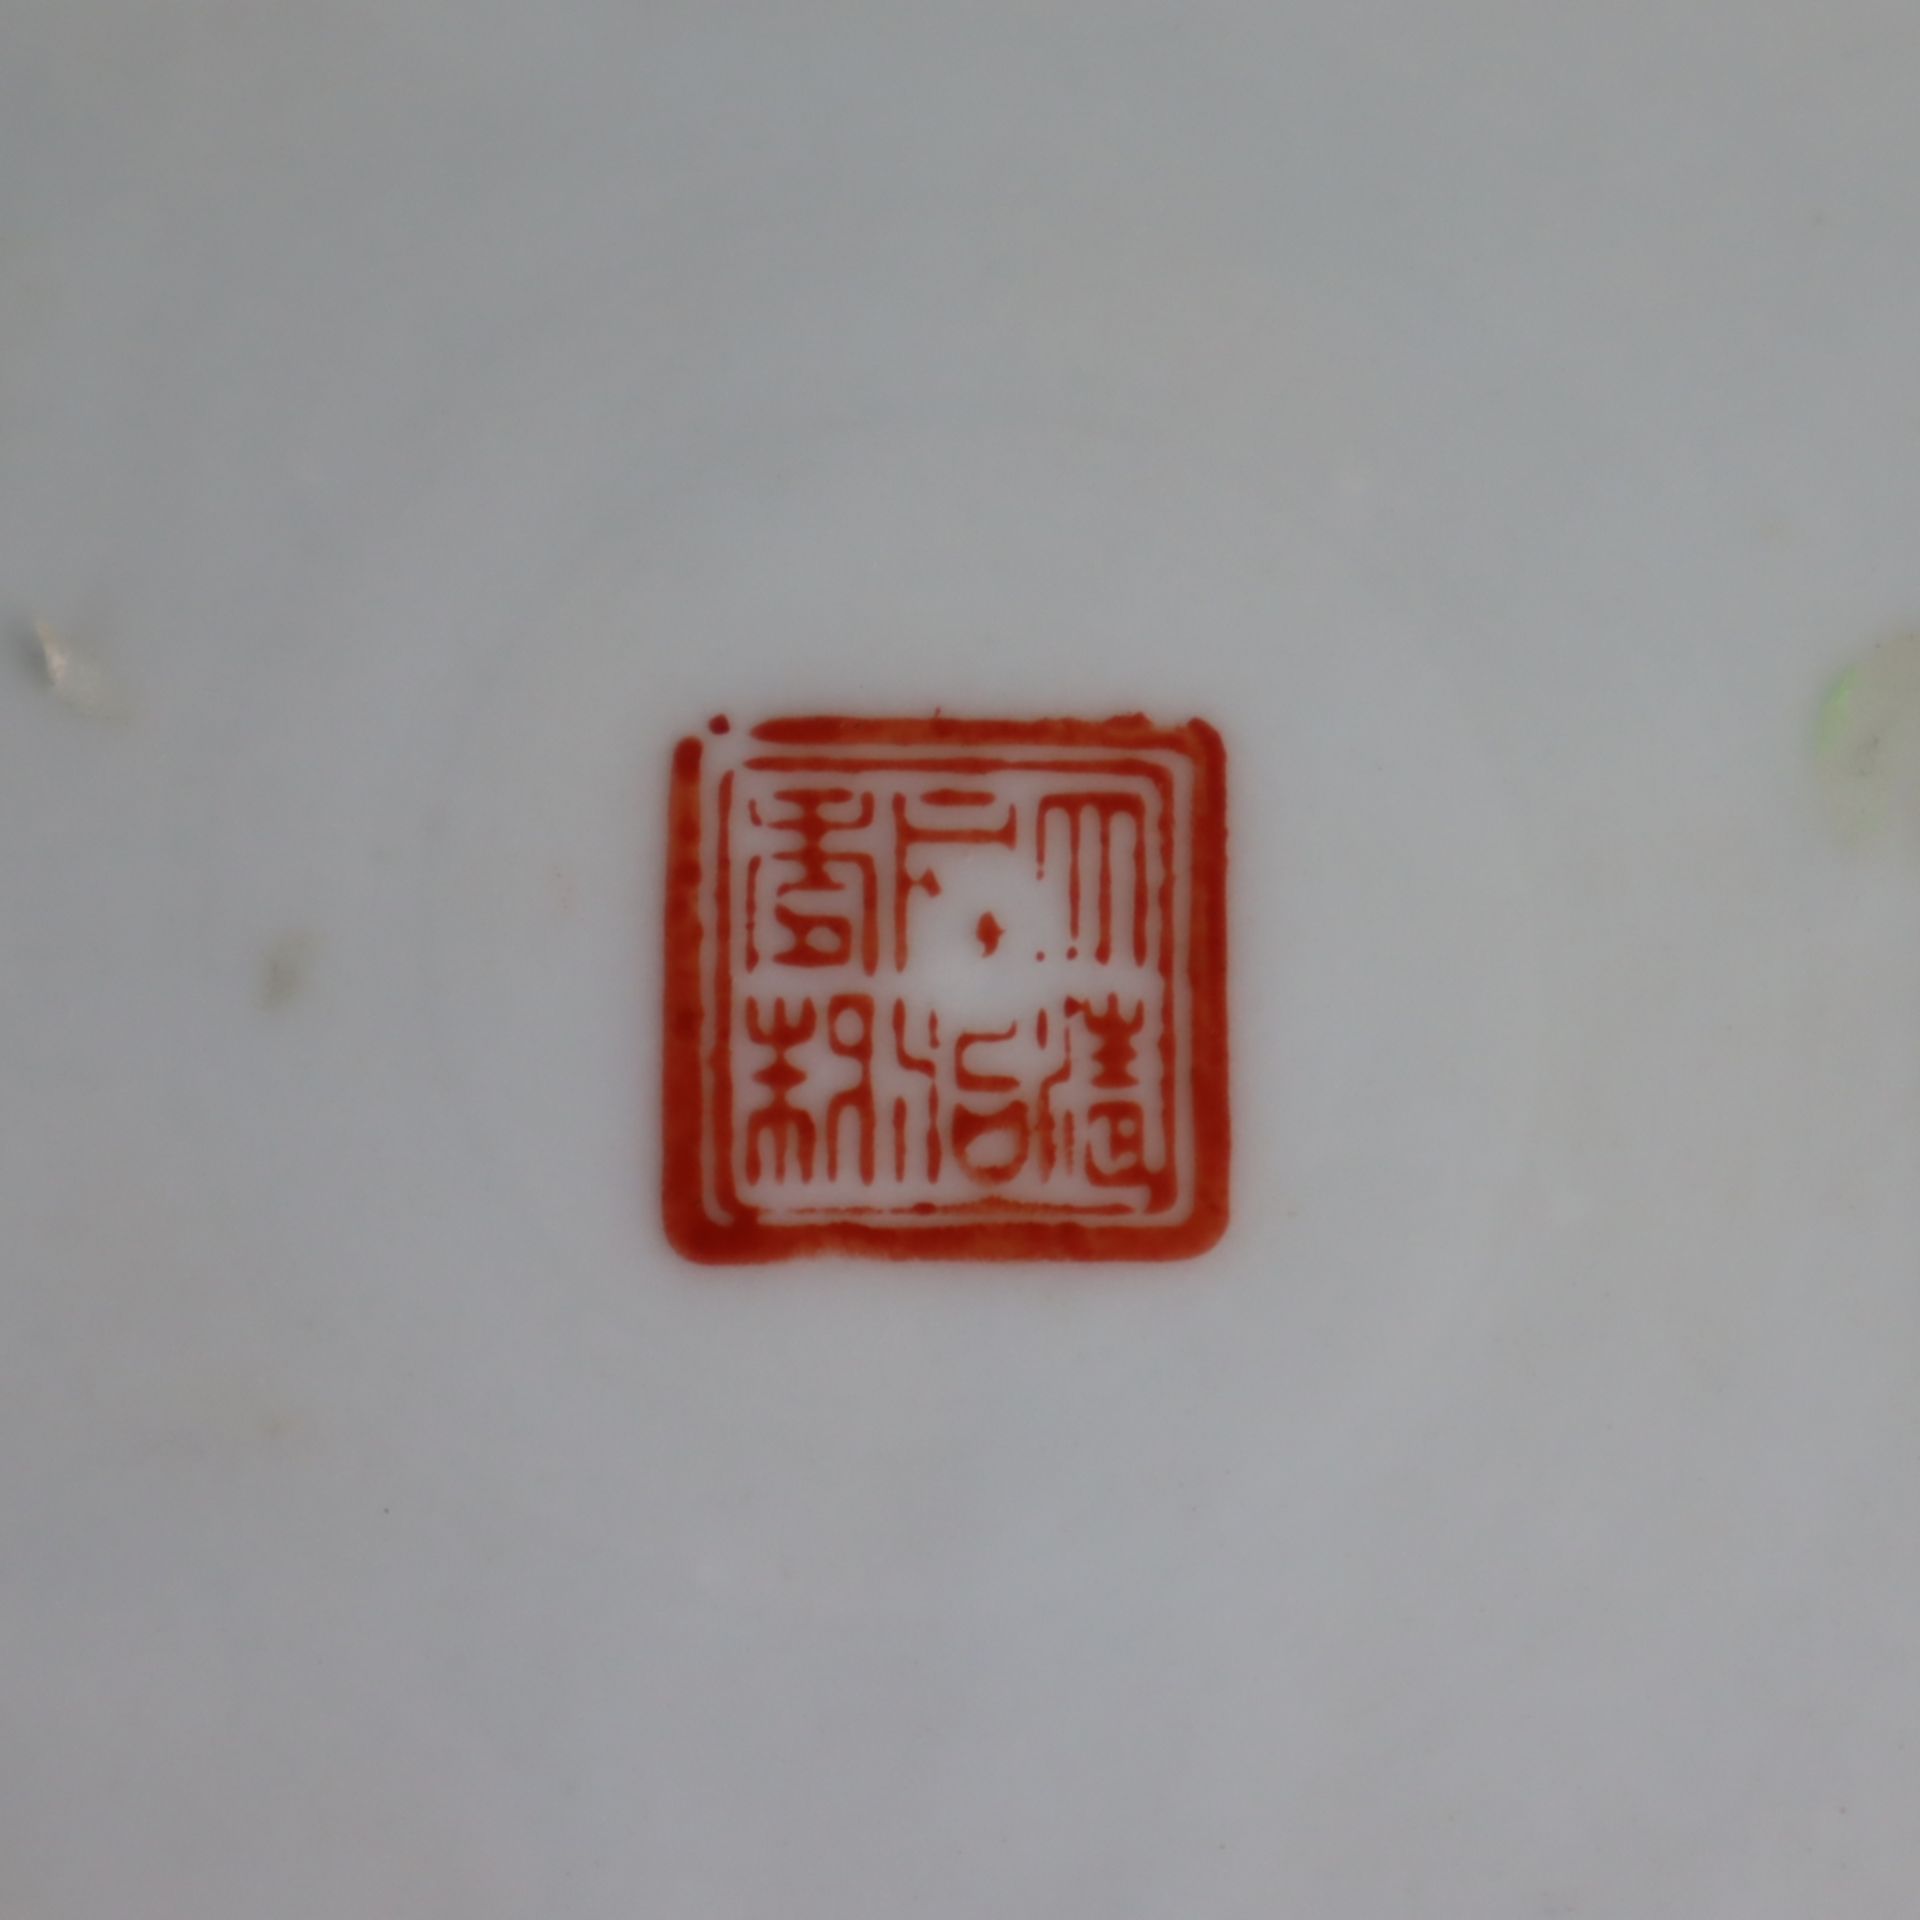 Pinselgefäß - China, 1.Hälfte 20.Jh., Porzellan, zylindrische Wandung mit umlau - Bild 8 aus 8